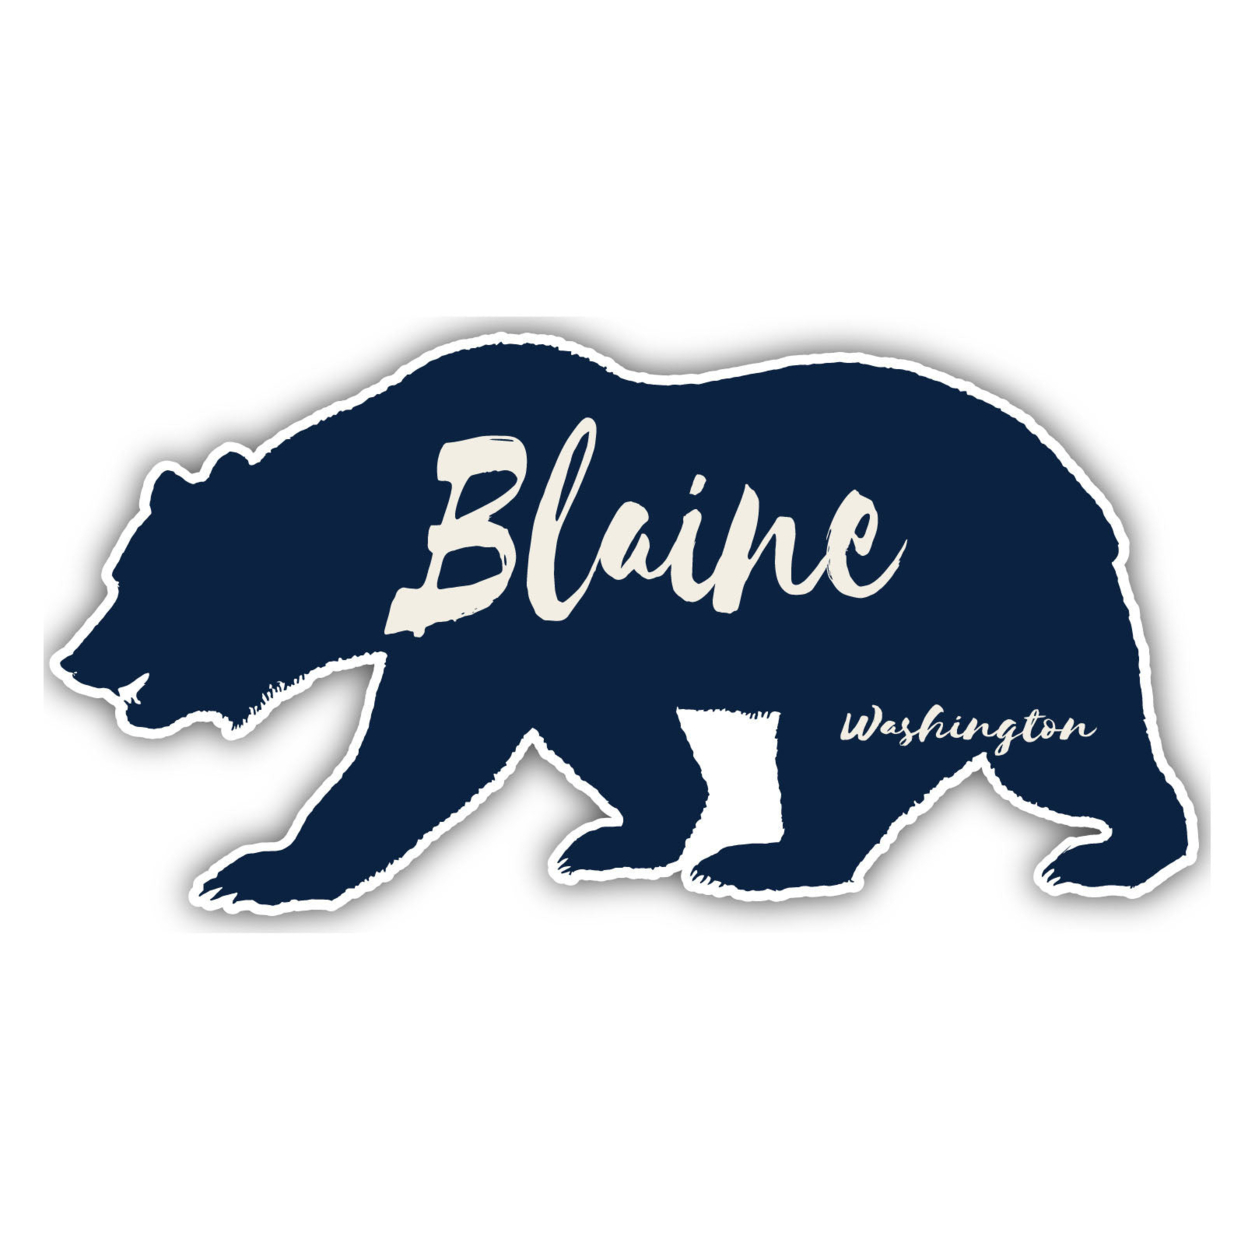 Blaine Washington Souvenir Decorative Stickers (Choose Theme And Size) - Single Unit, 12-Inch, Tent